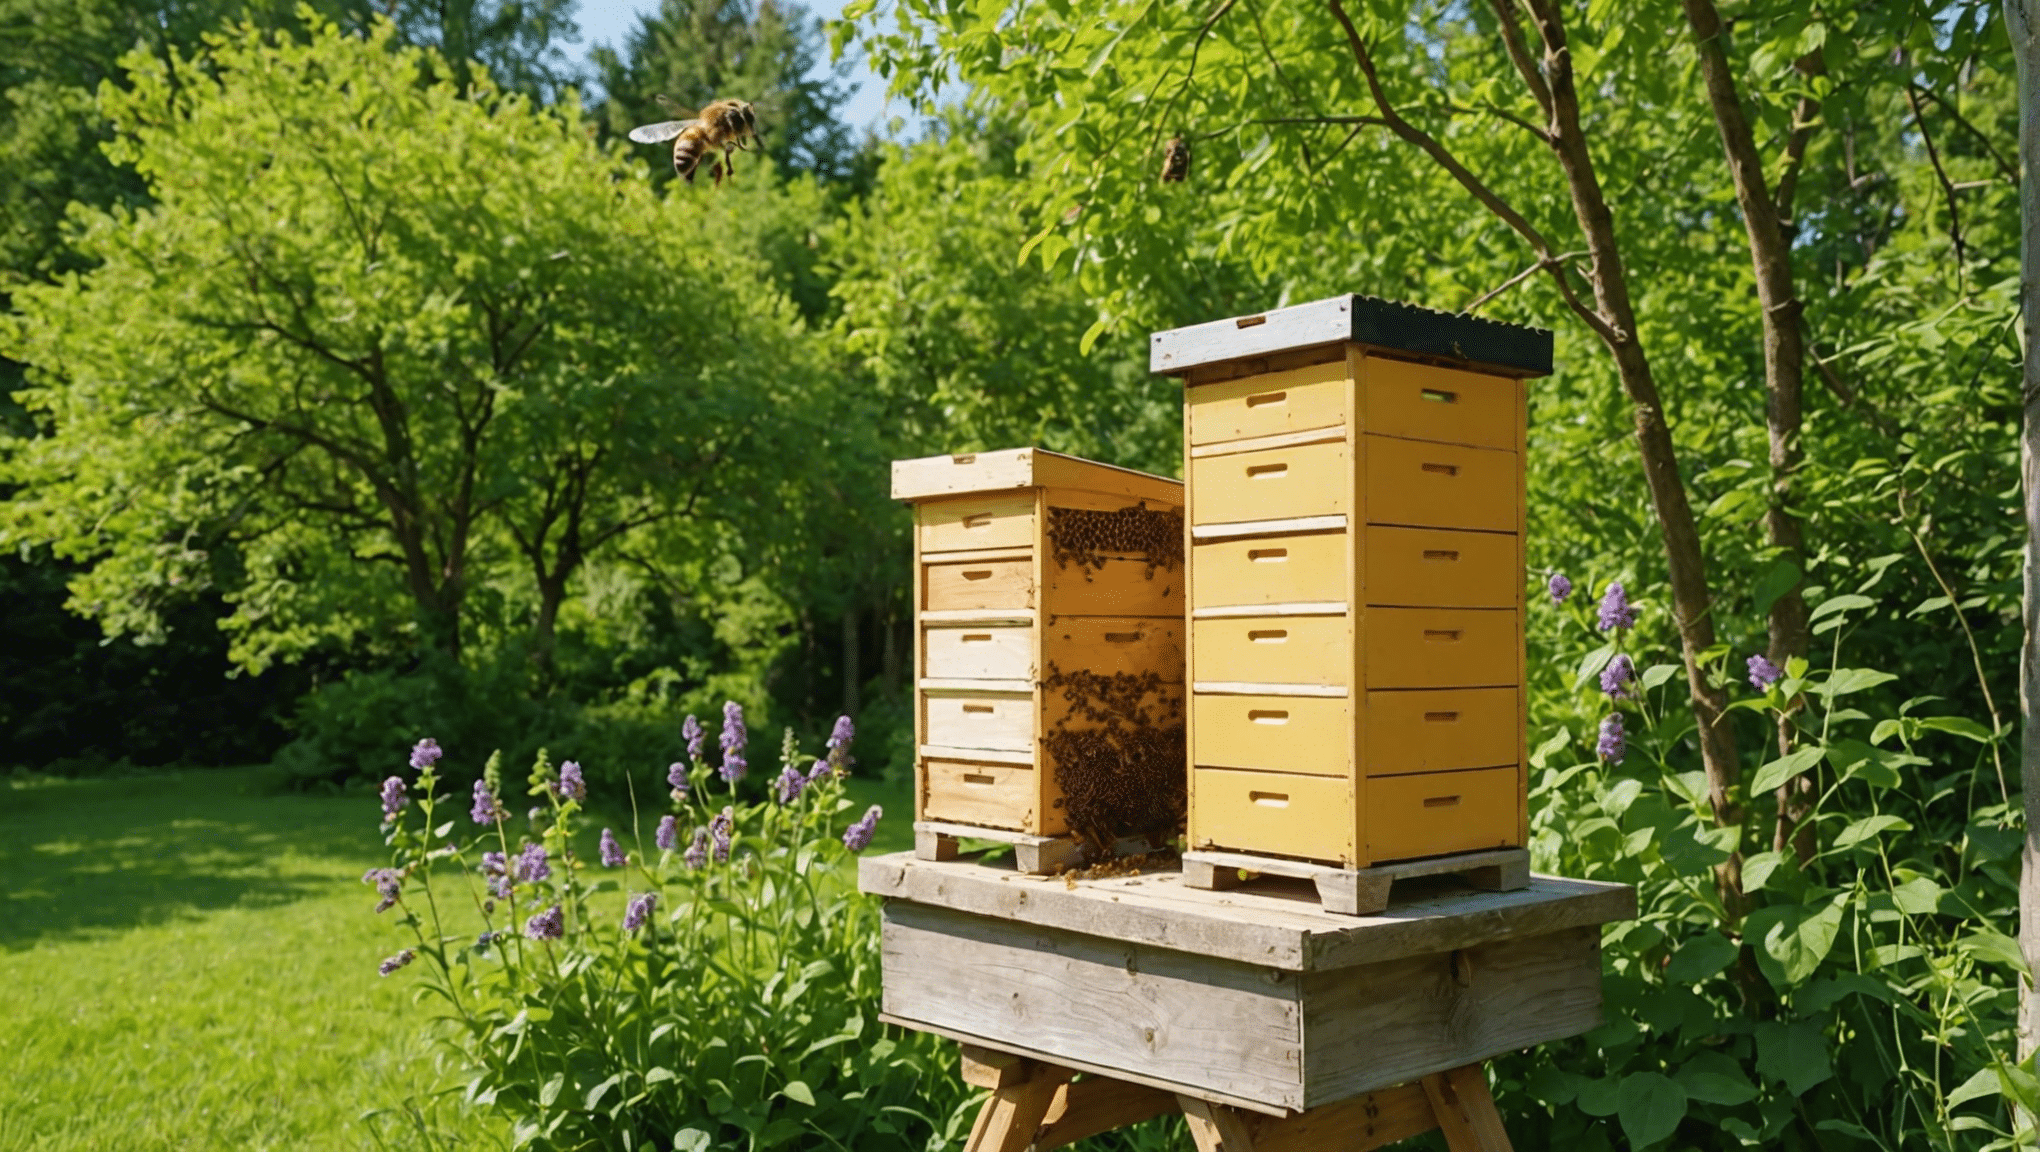 v tem obsežnem vodniku poiščite vse, kar morate vedeti o naravnih čebeljih panjih, vključno s tem, kako so izdelani, njihovimi koristmi in kako zanje skrbeti.